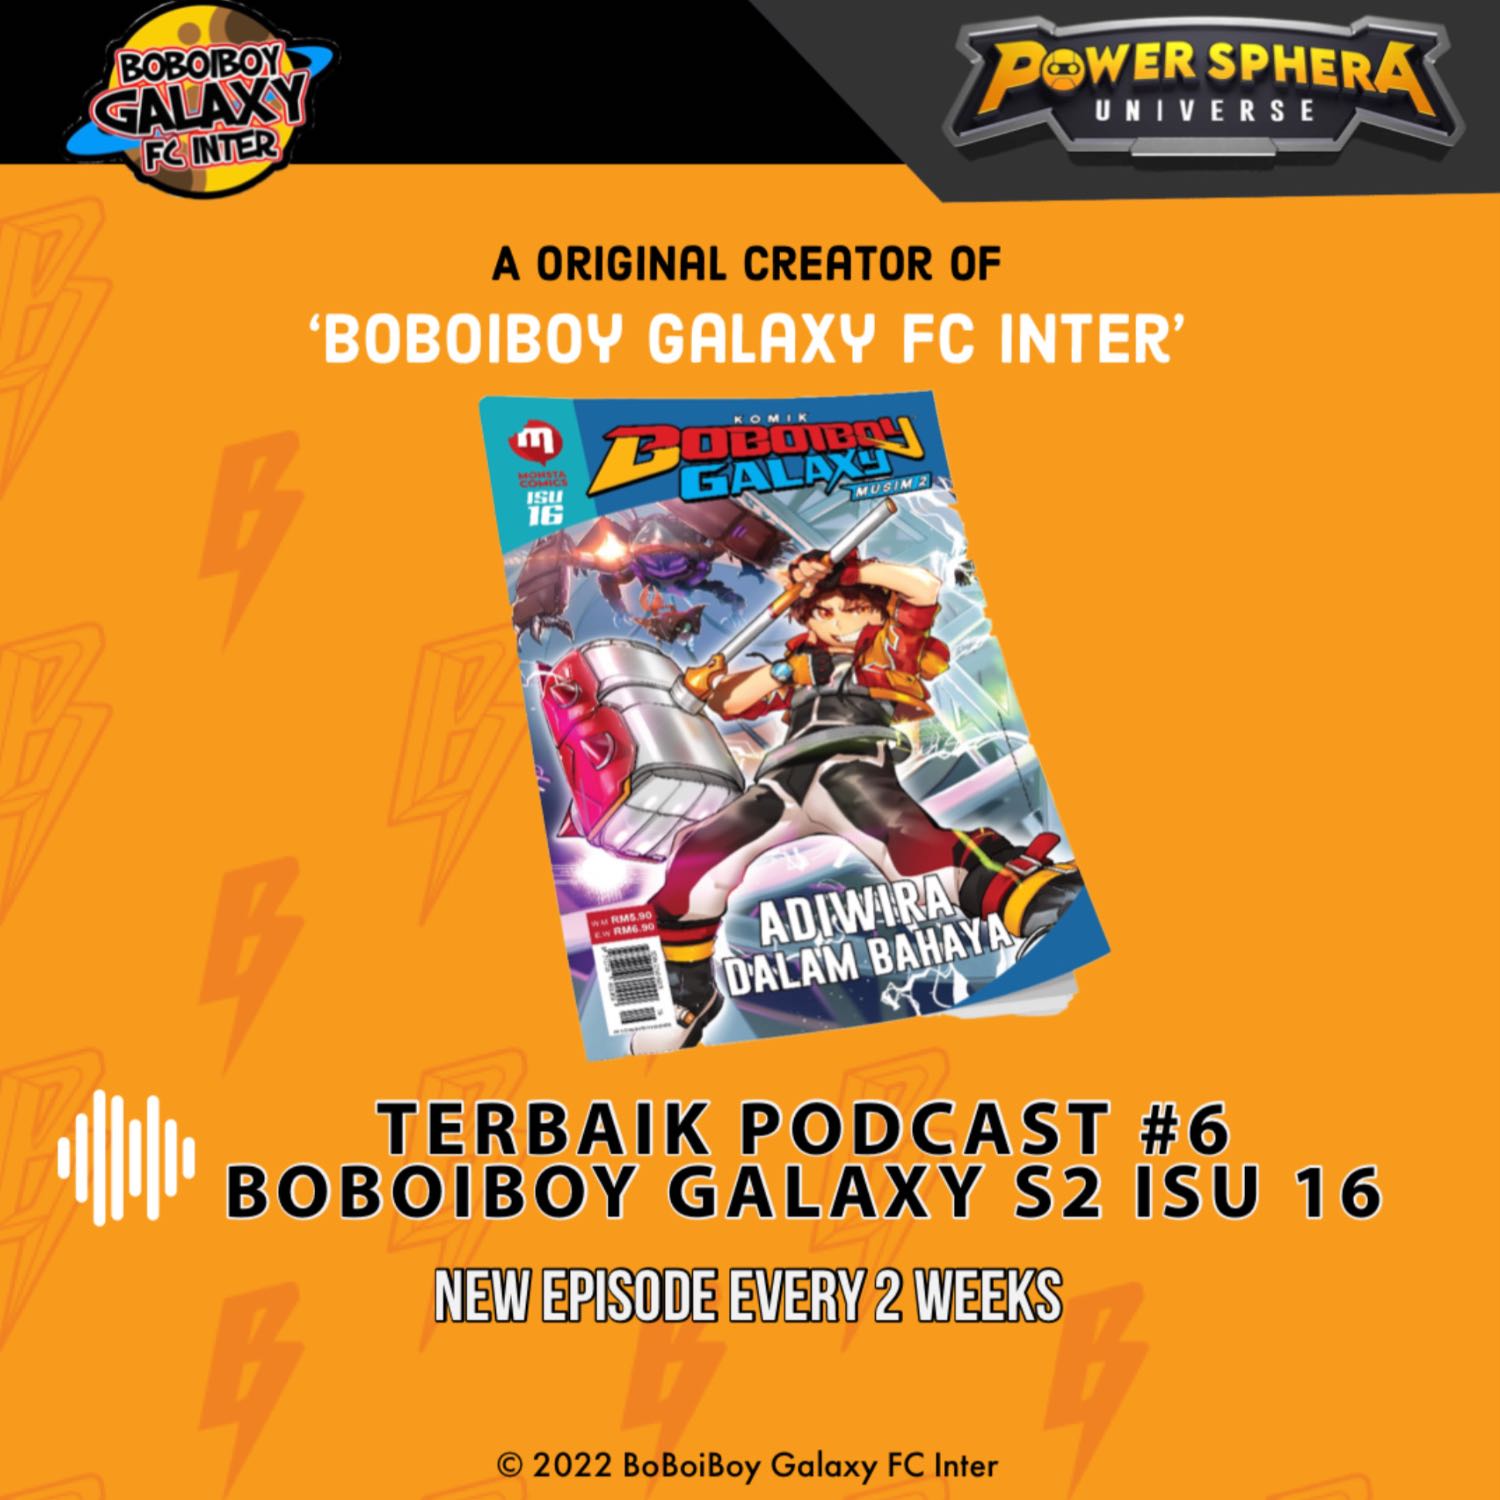 Terbaik Podcast #6 - BoBoiBoy Galaxy Season 2 Issue 16 Spoiler